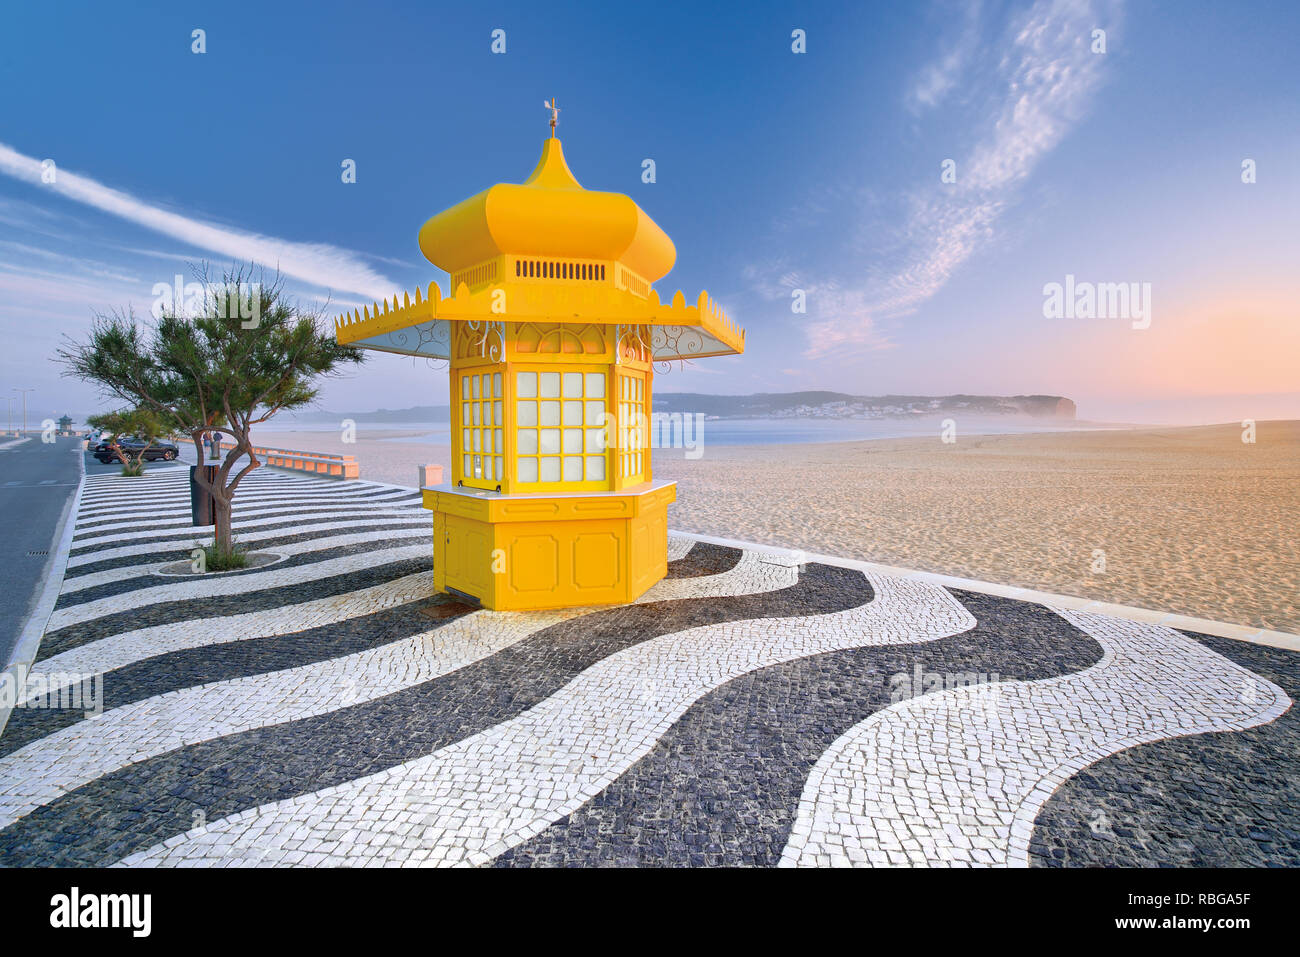 Kiosque jaune sur les trottoirs pavés de noir et de blanc à l'ornement de large plage de sable solitaires Banque D'Images